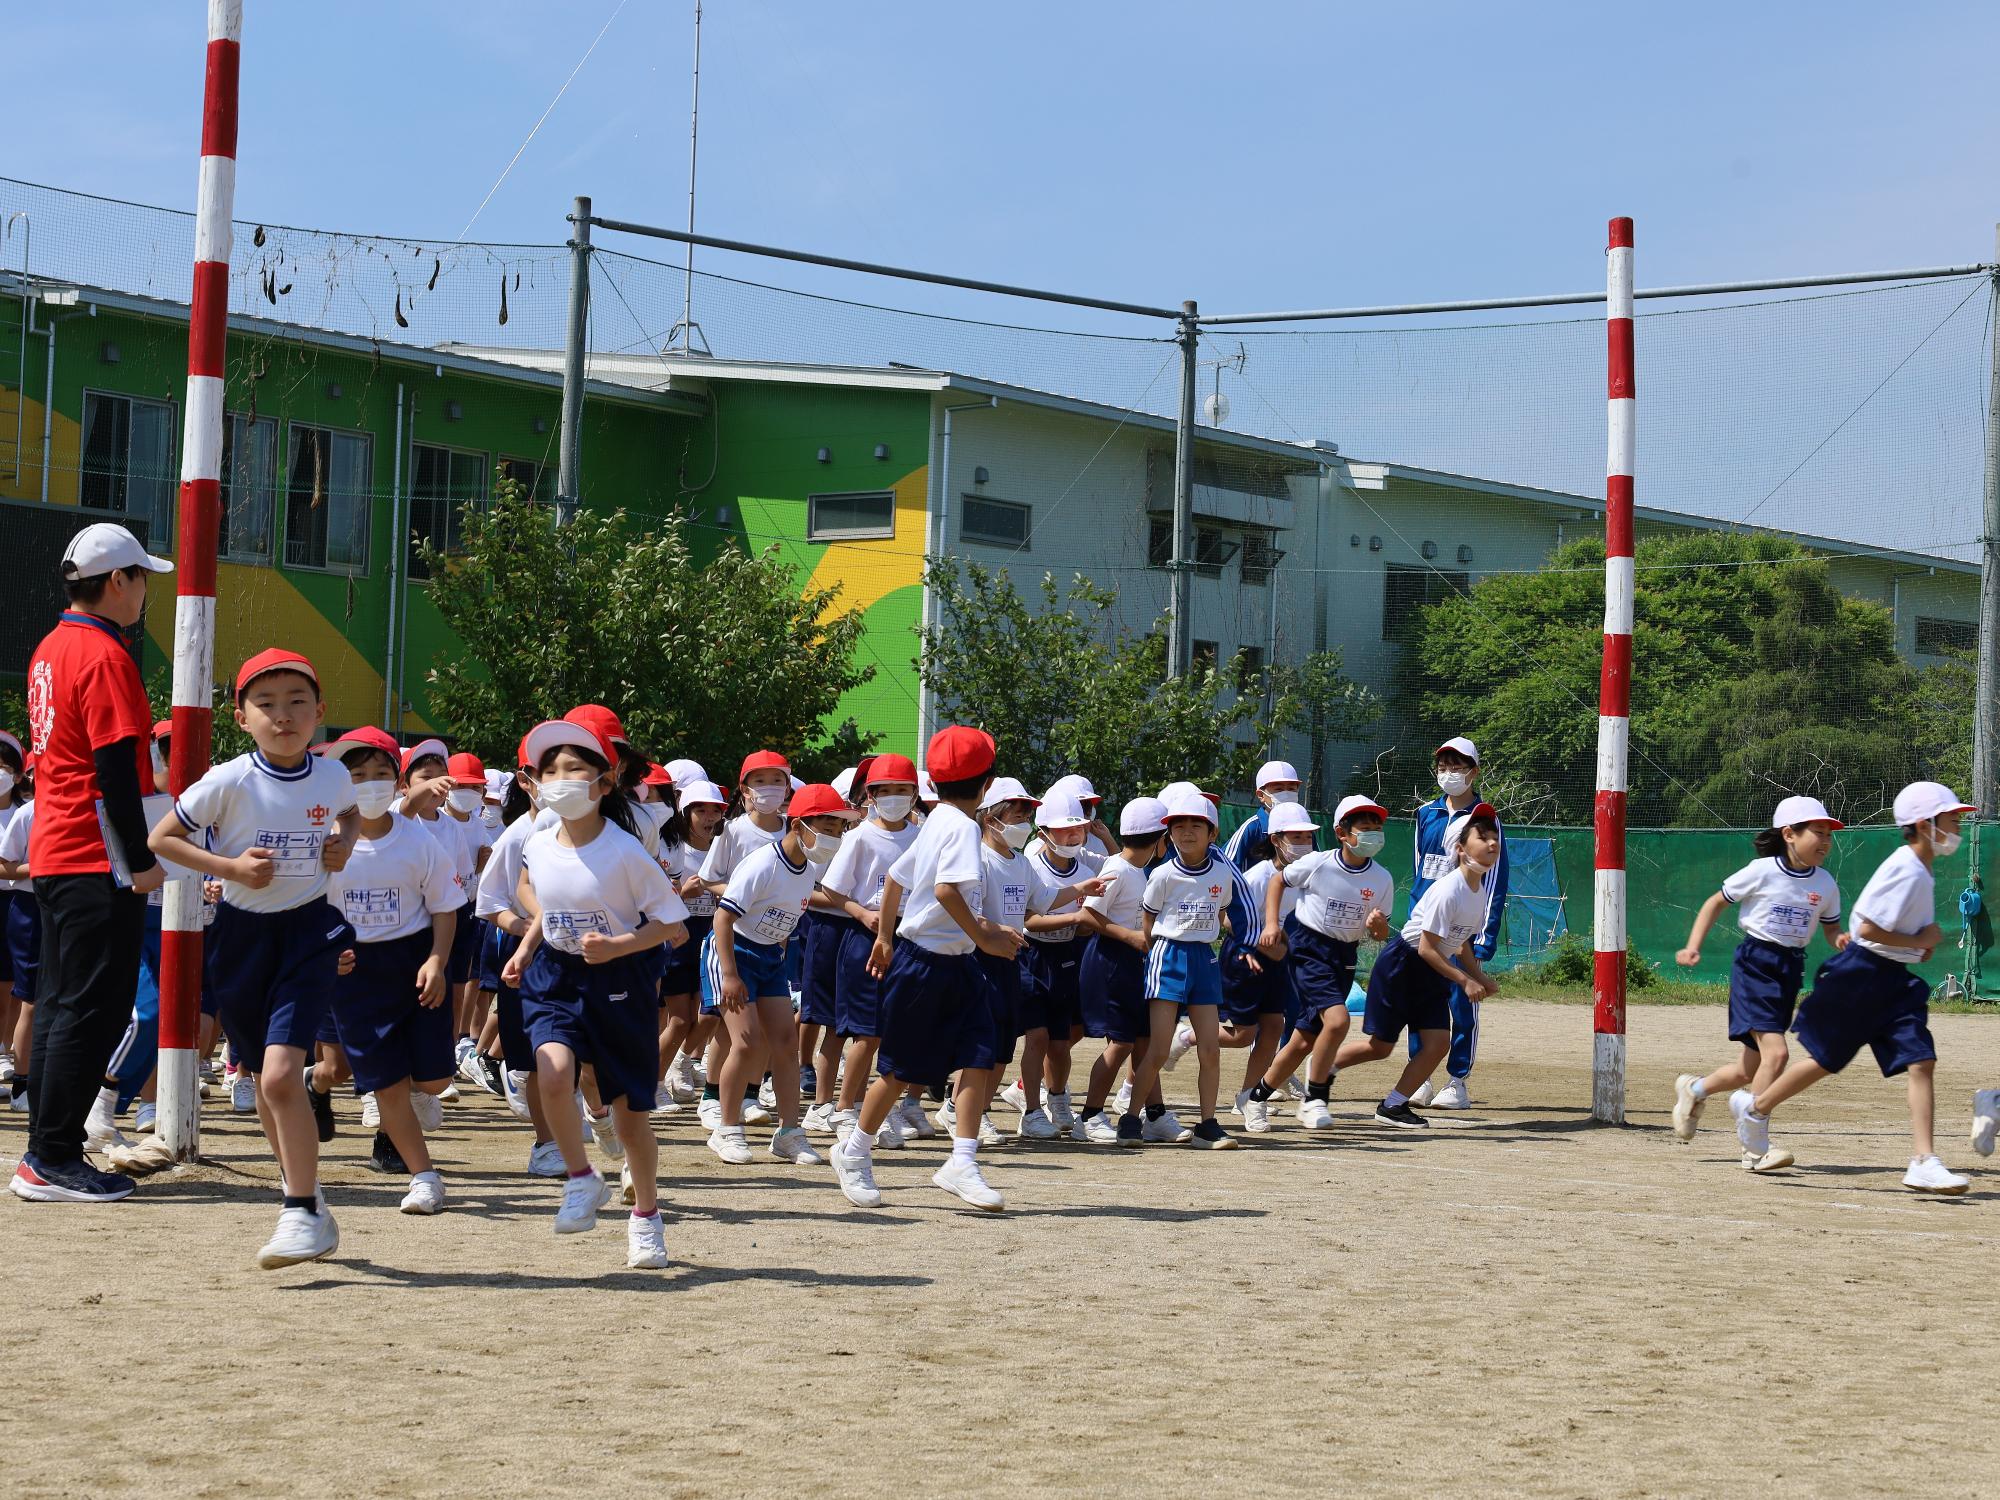 中村第一小学校スポーツフェスティバルで競技に臨むため校庭に入場する児童の様子